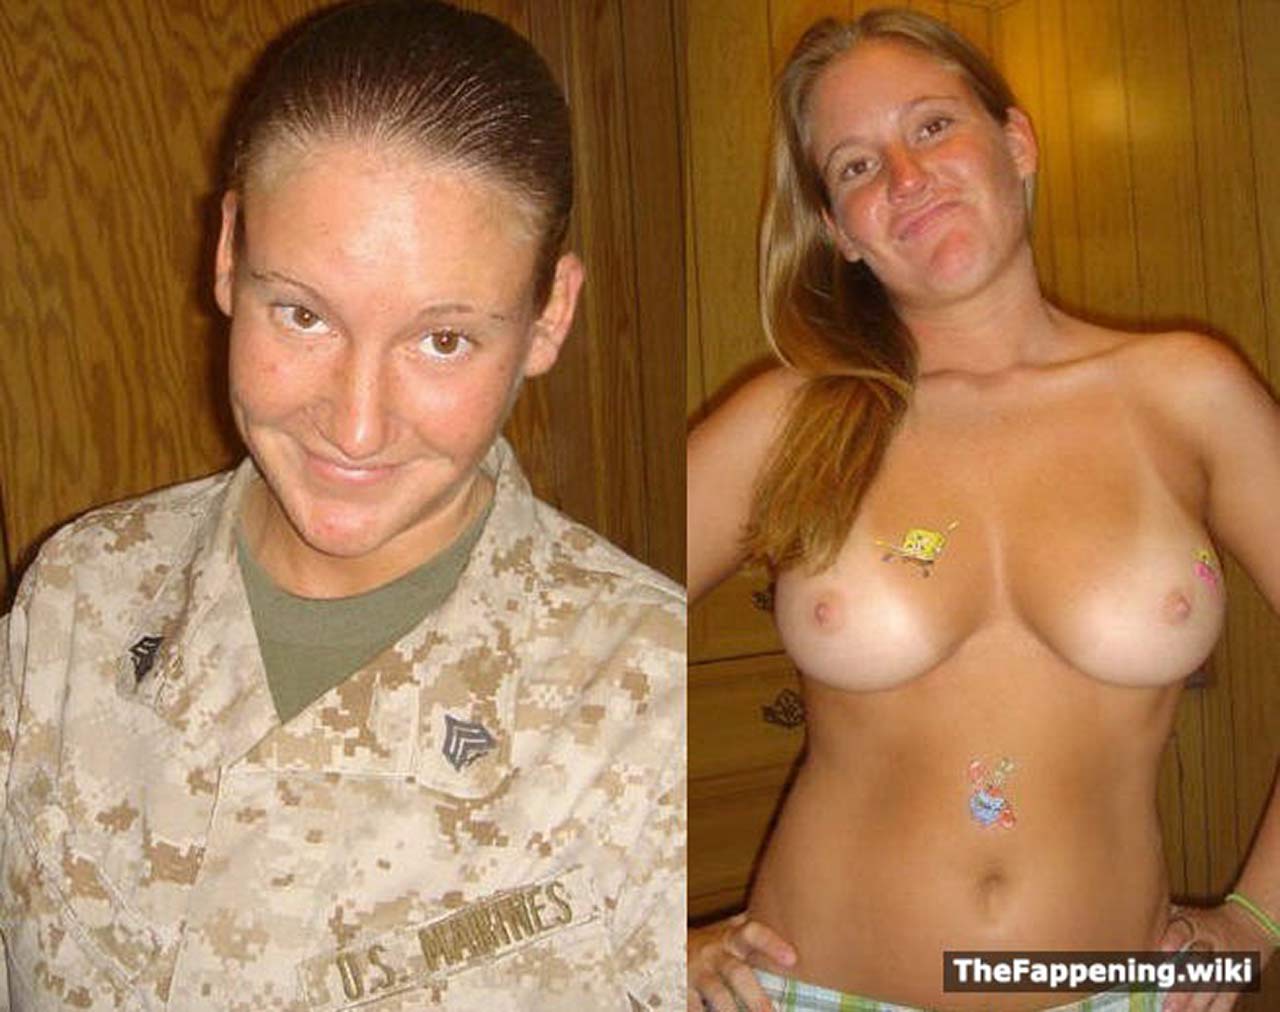 Nude marine photos leaked